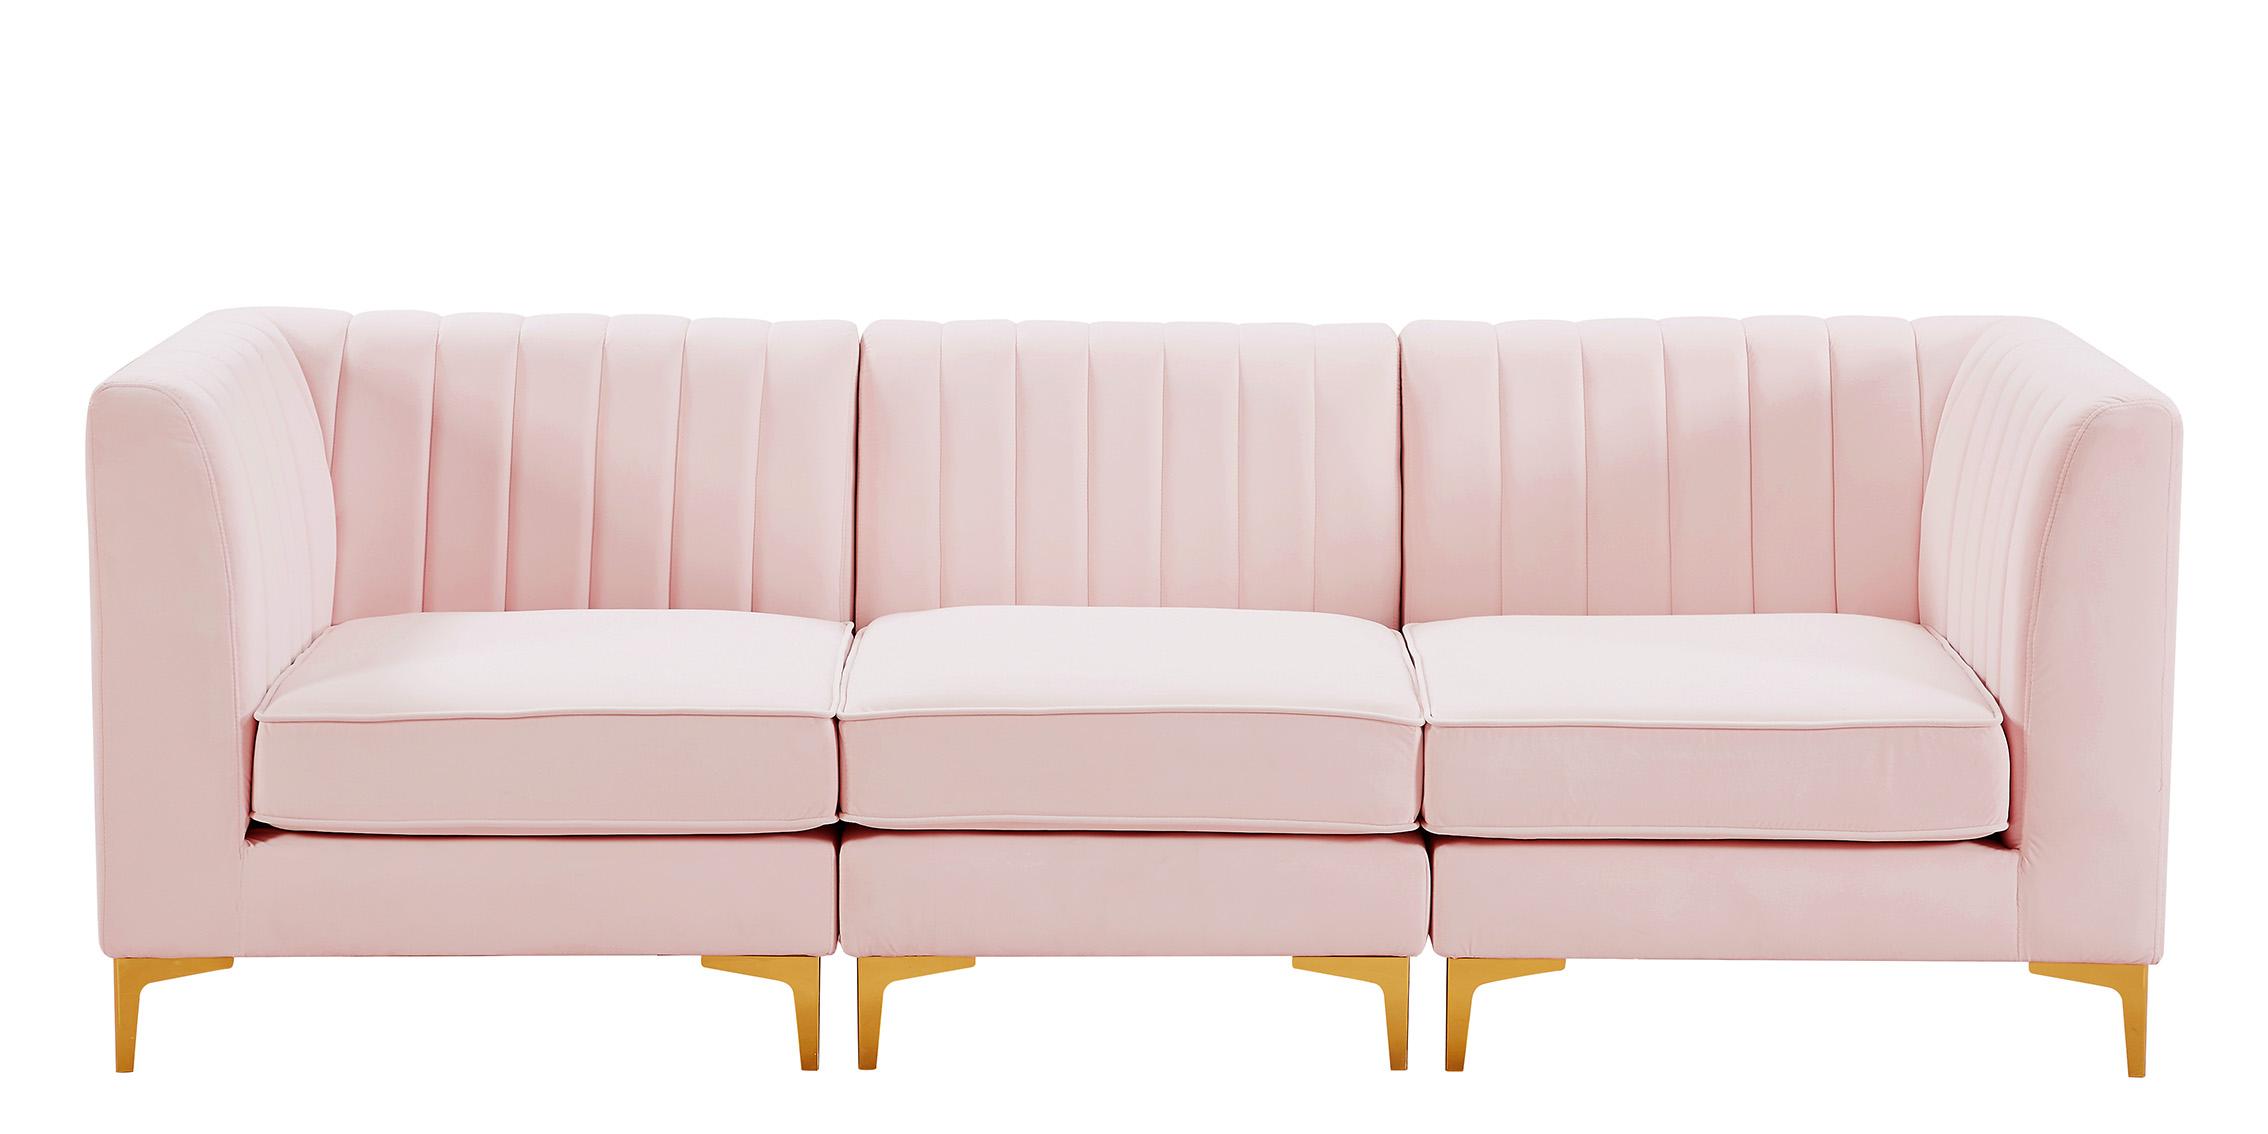 

    
Meridian Furniture ALINA 604Pink-S93 Modular Sectional Sofa Pink 604Pink-S93
